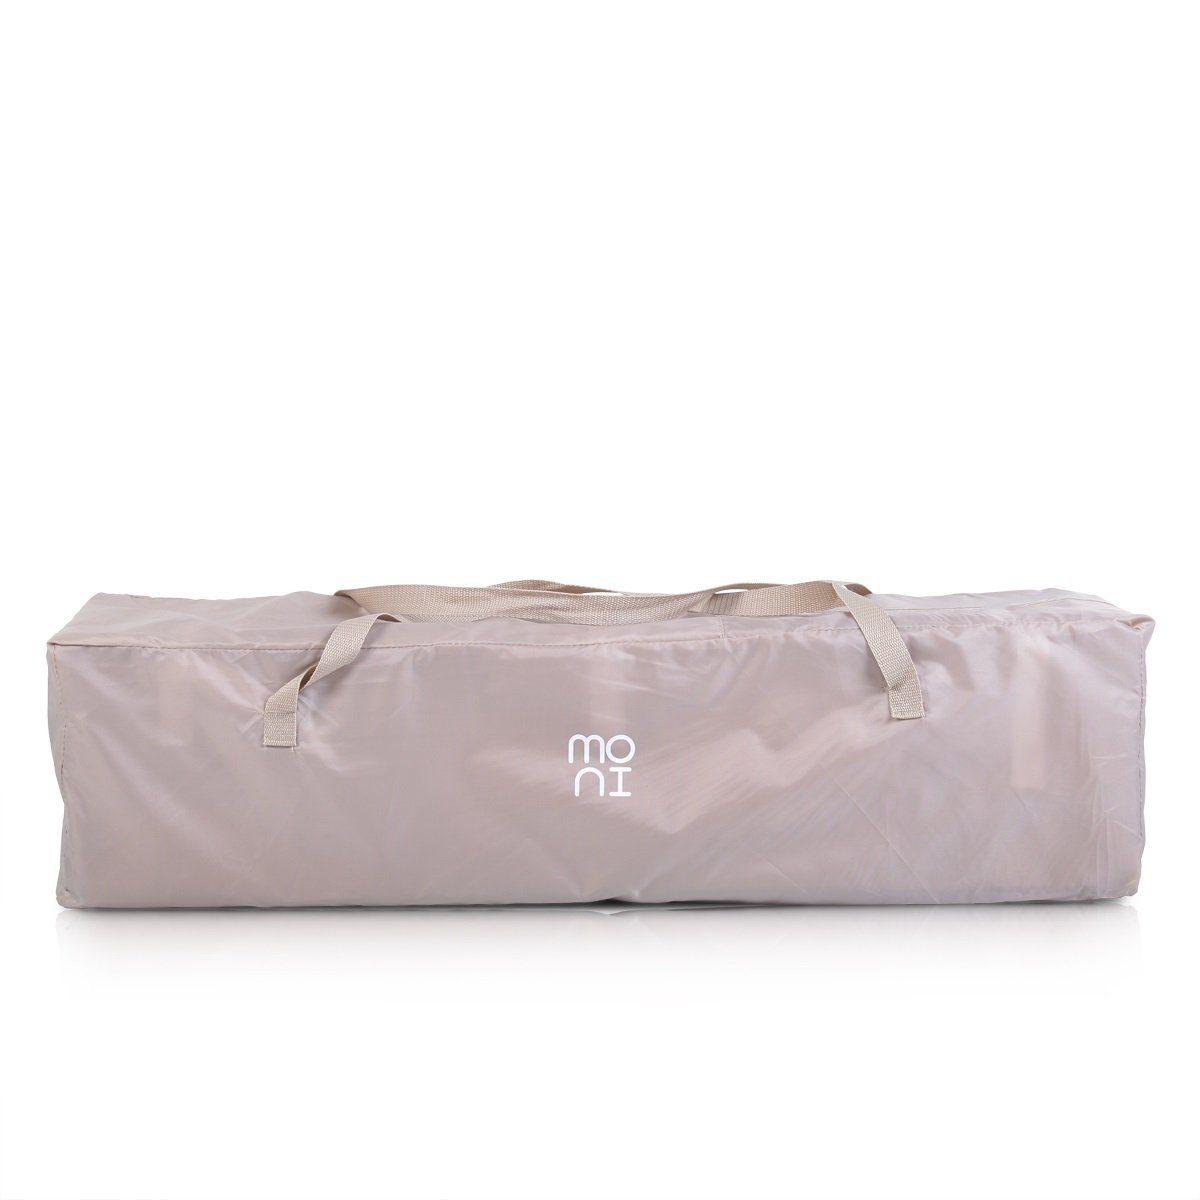 Moni Matratze Reiselaufstall grau als pink Reisebett mit Giant, Laufstall klappbar, Laufstall